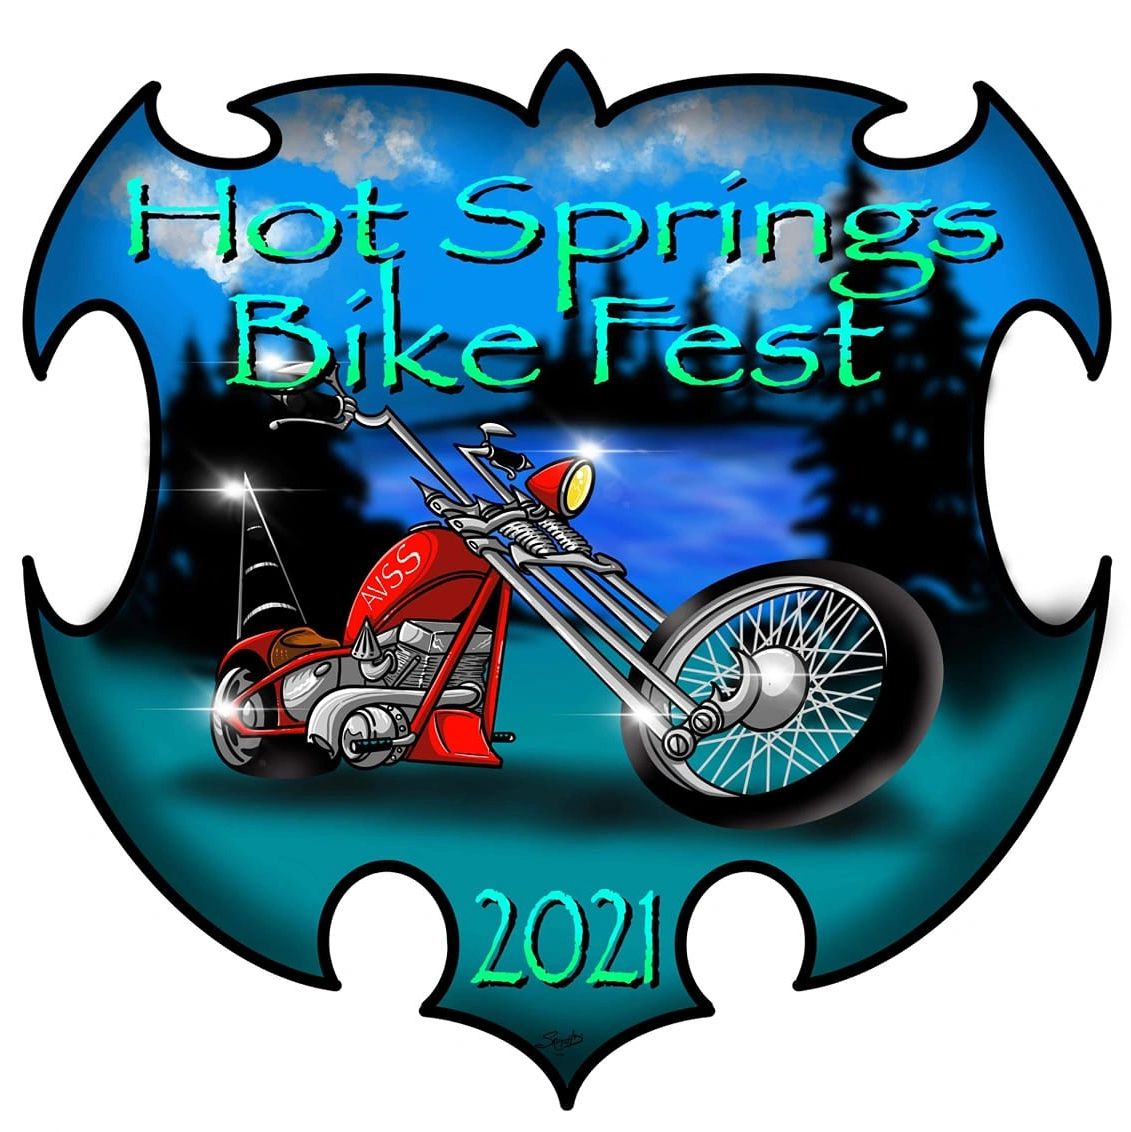 Hot Springs Bike Fest